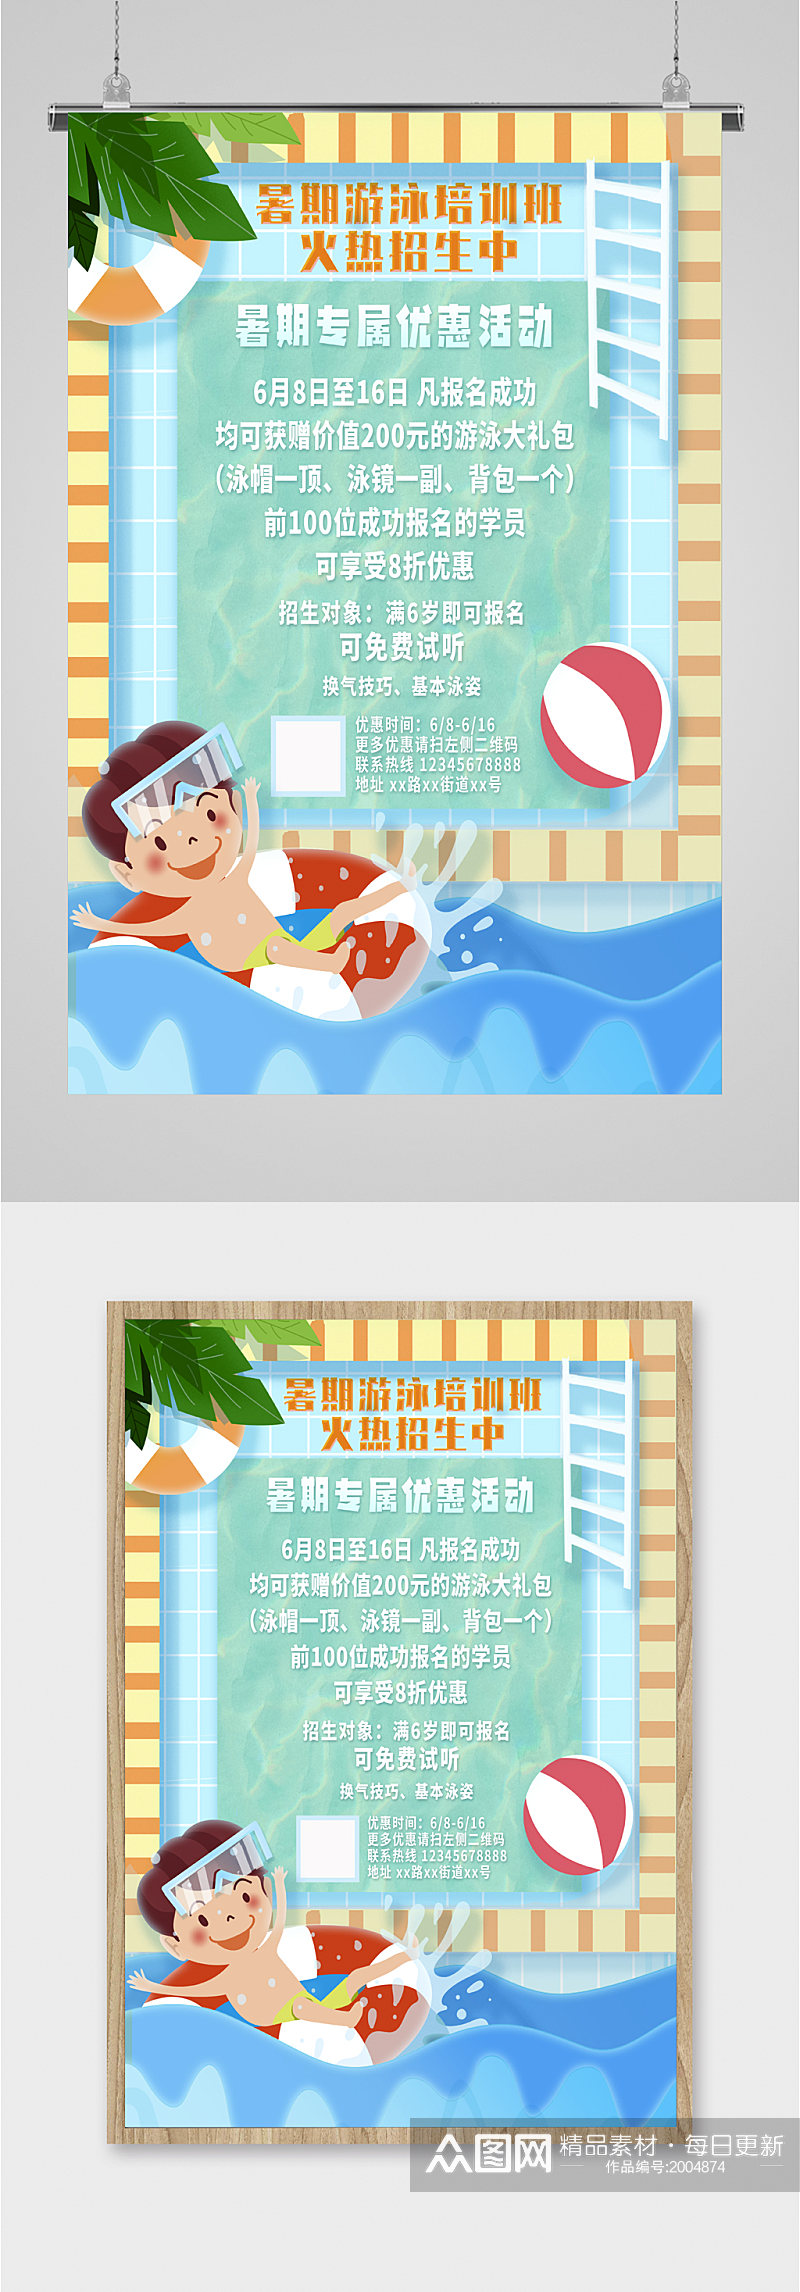 暑期游泳班宣传海报素材